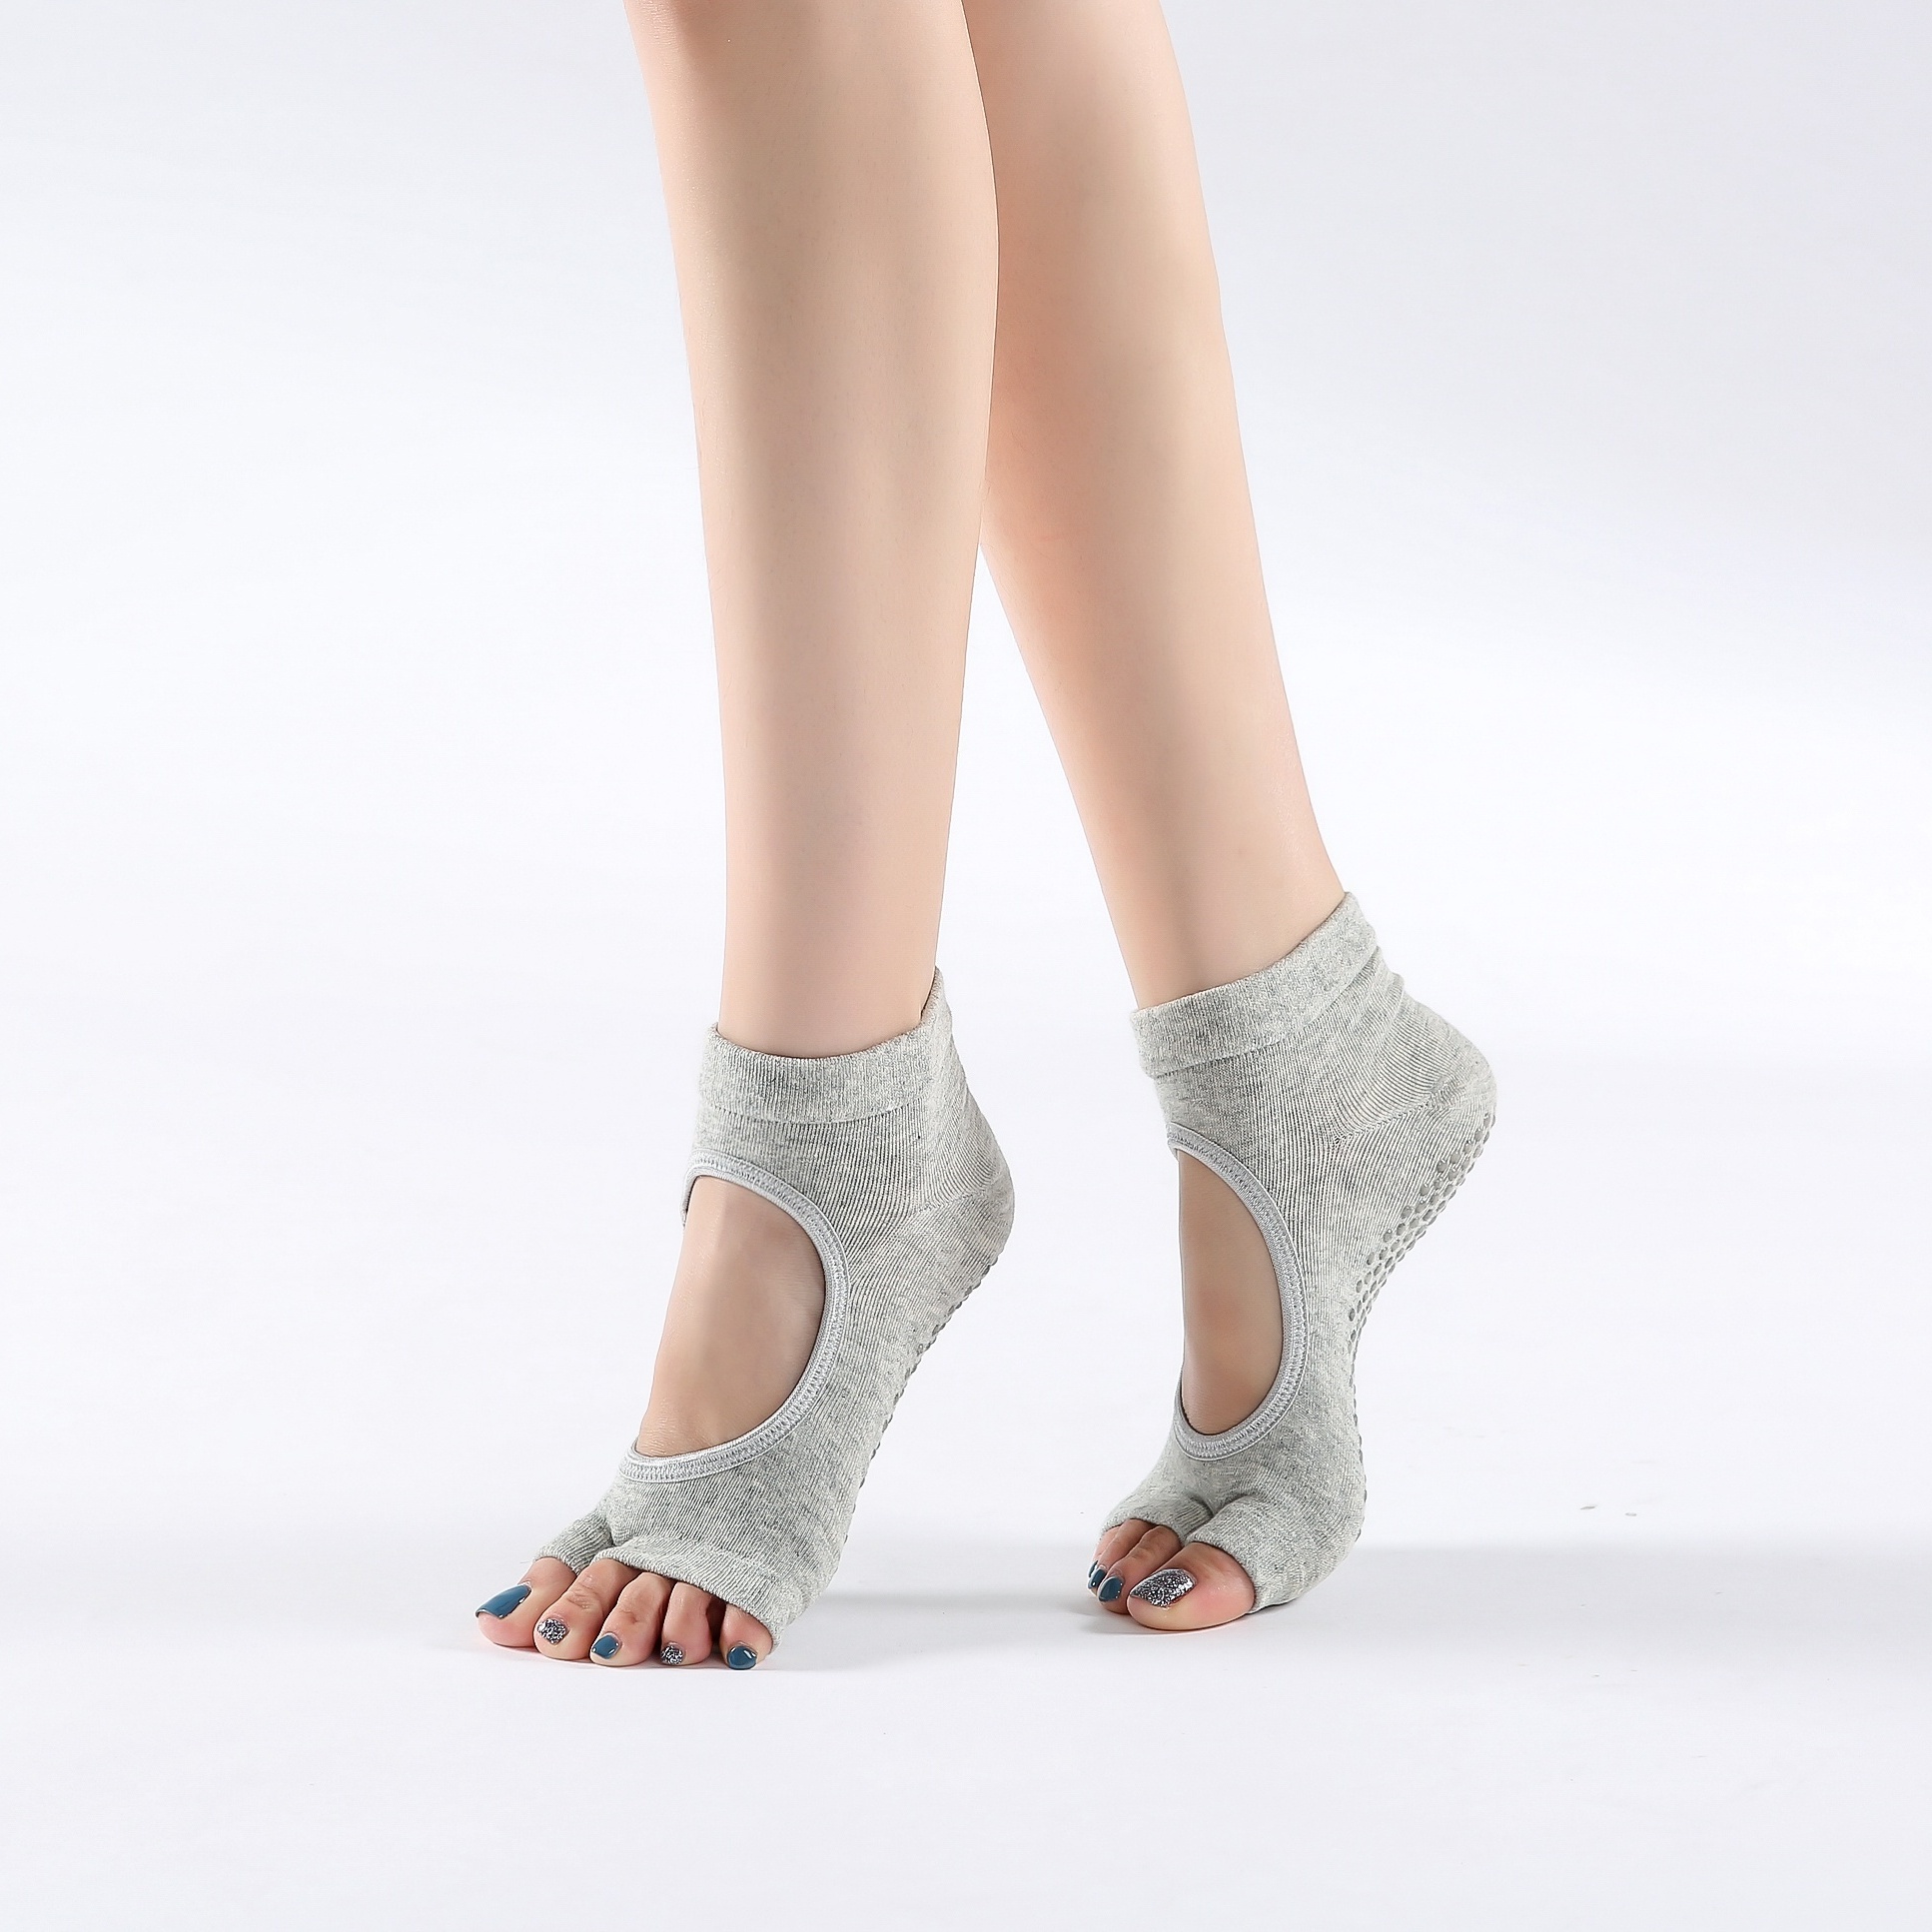 Yoga Socks Toeless Non-slip Grips & Straps, For Pilates, Barre